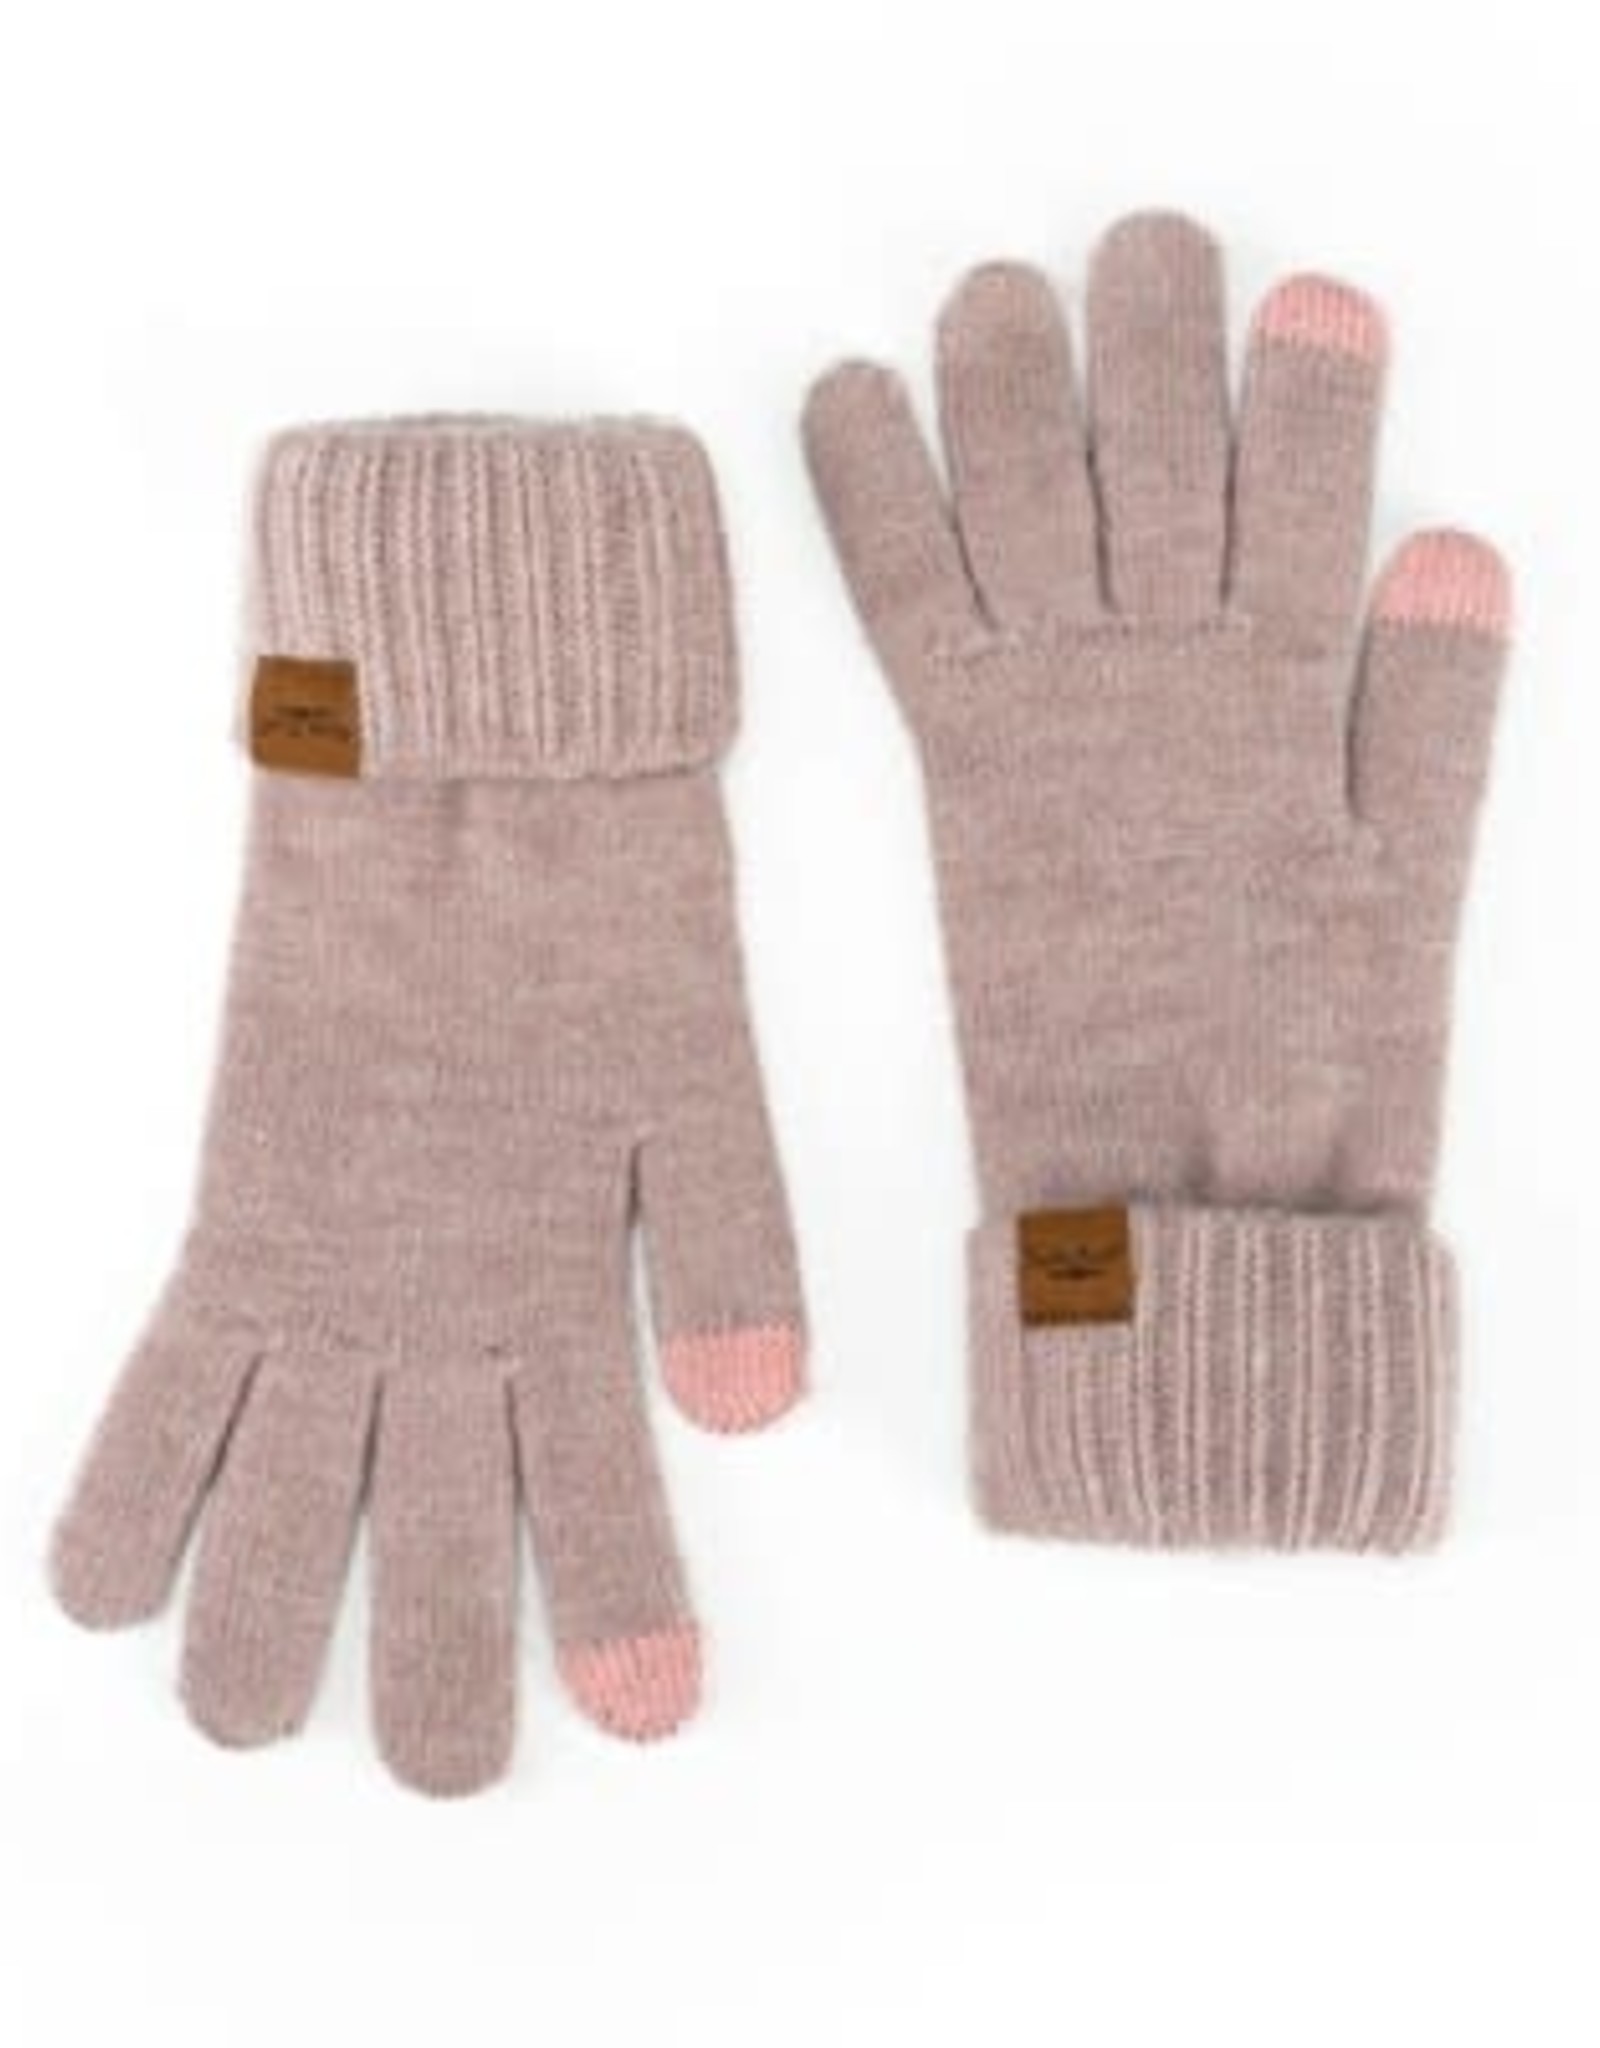 DM Merchandising MAINSTAY CUFF GLOVES - warm knit